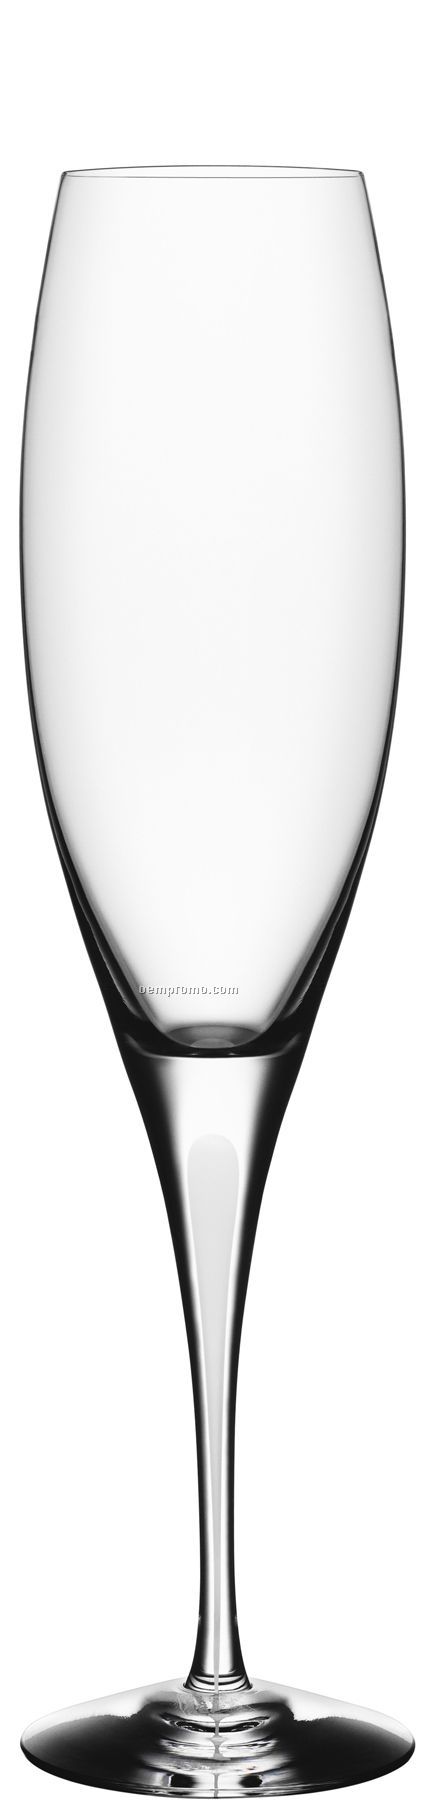 Intermezzo Crystal Satin Champagne Flute Glass W/ White Drop